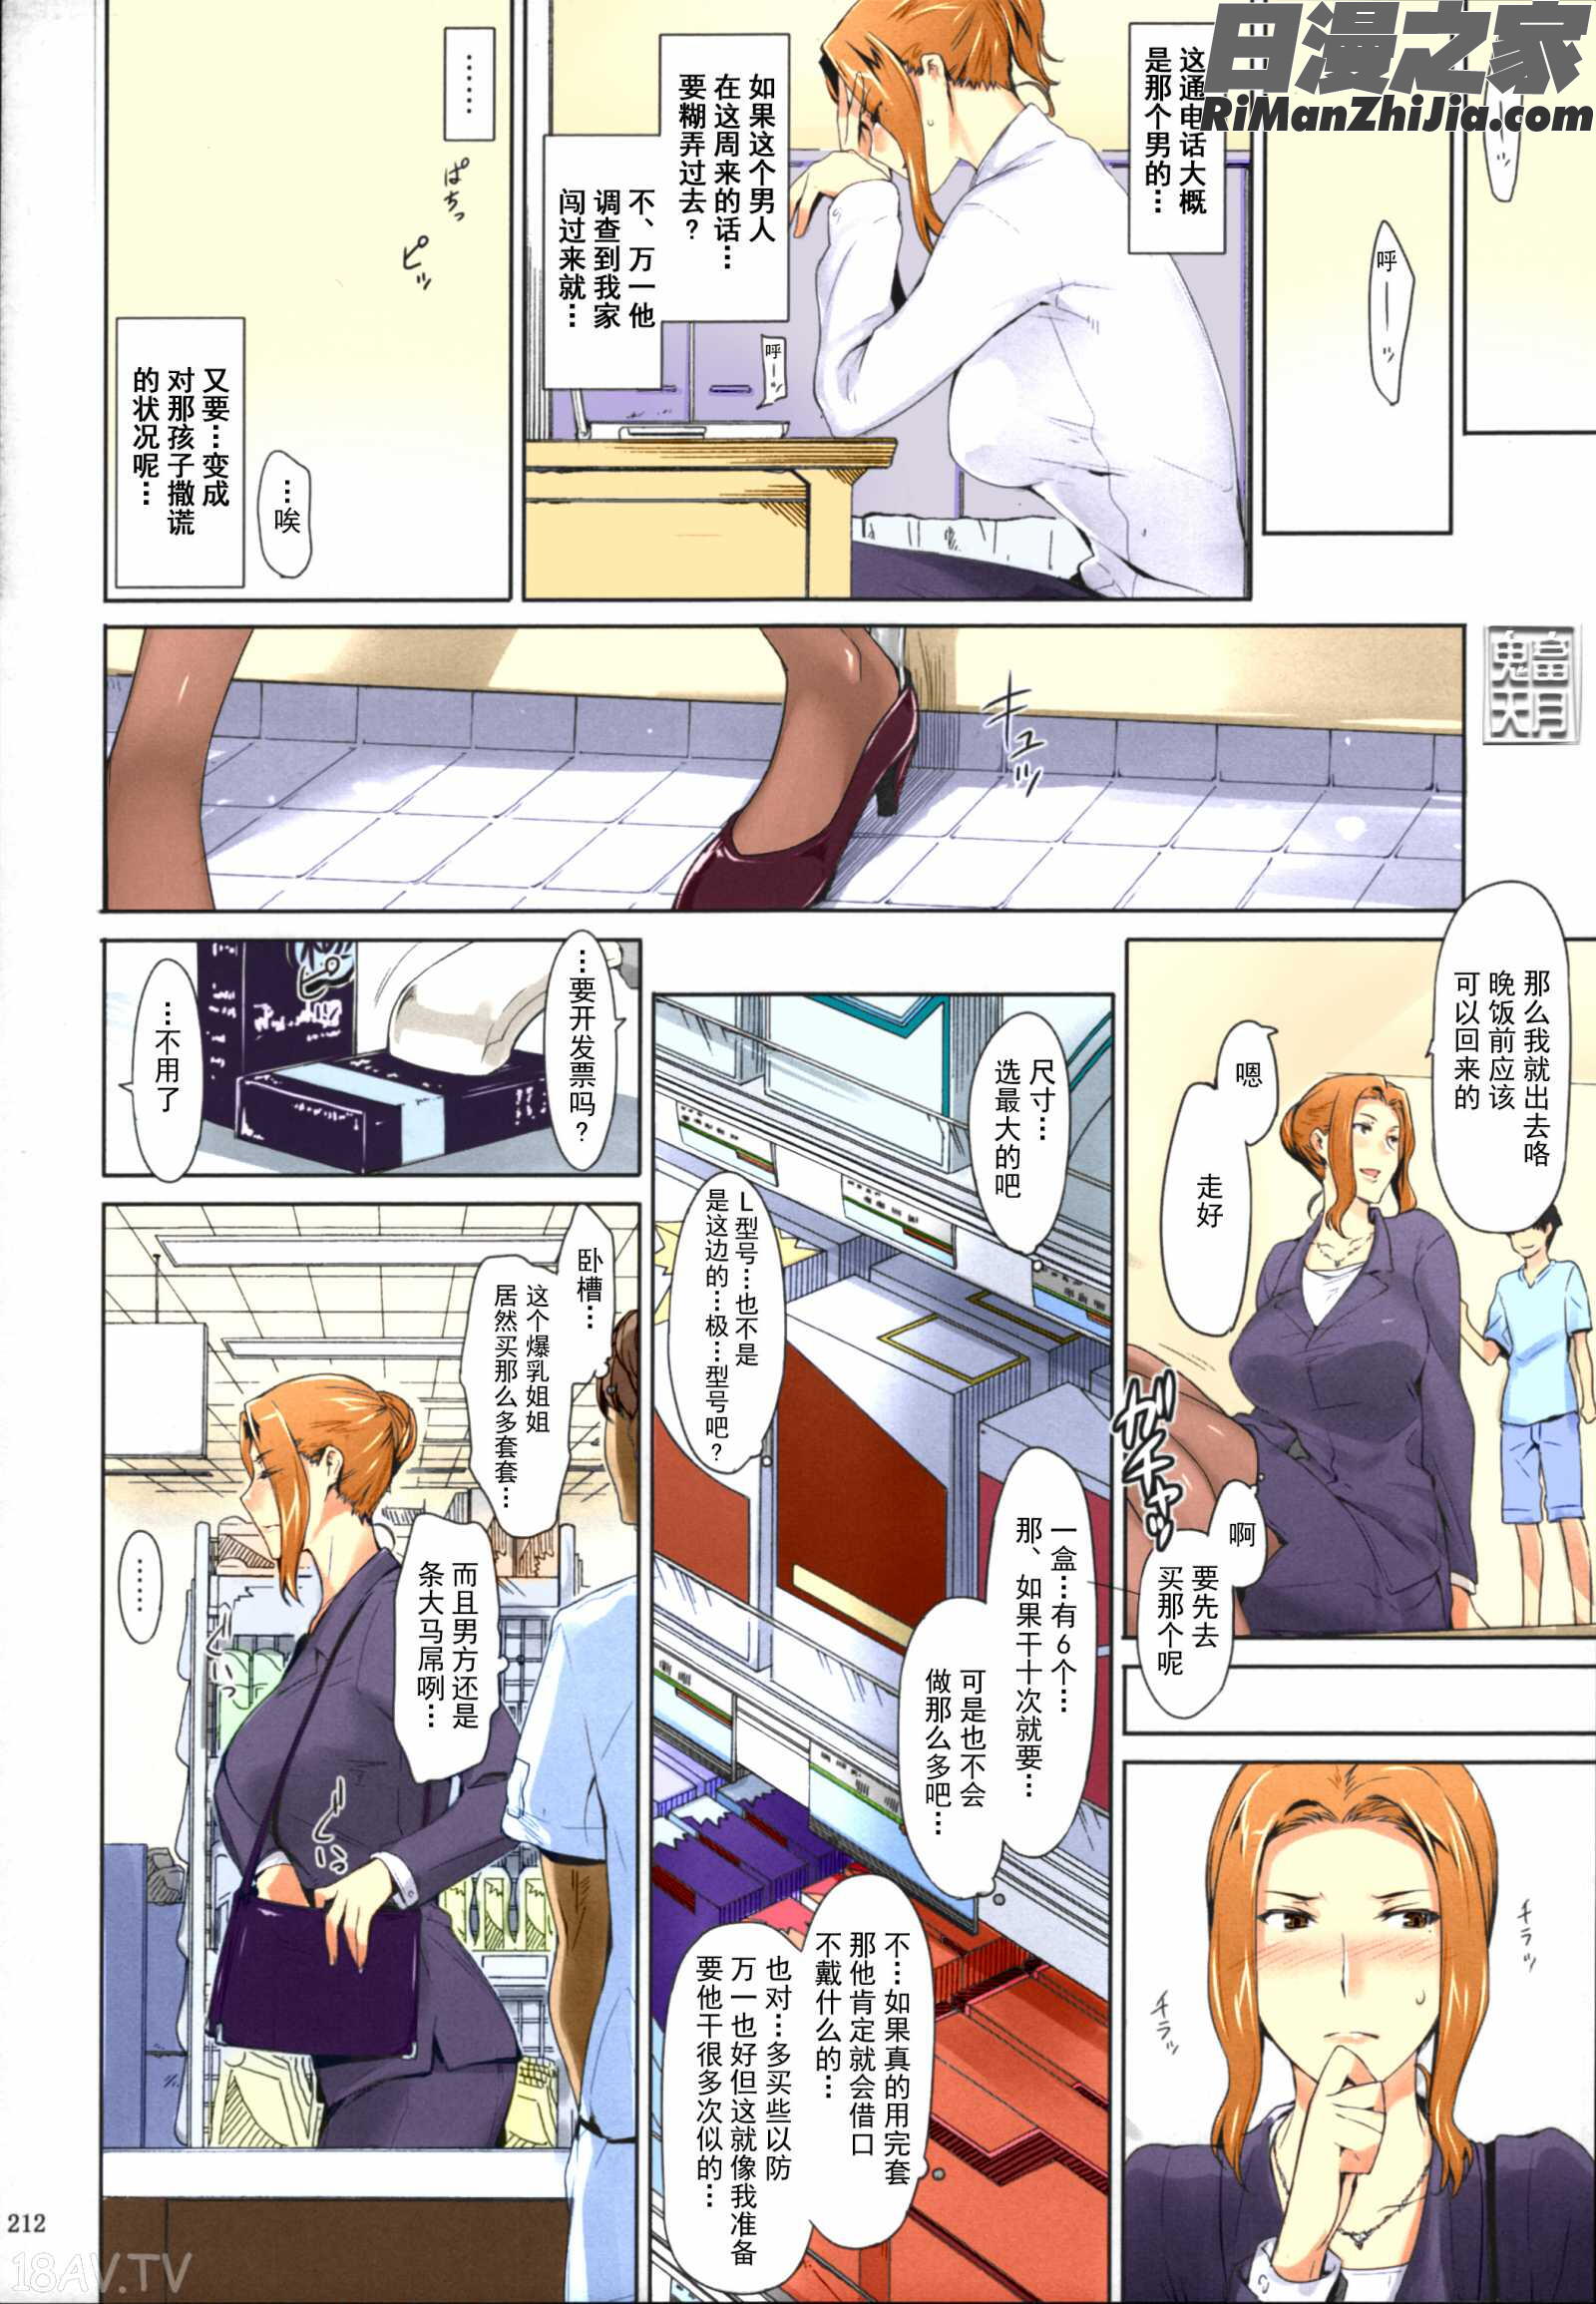 橘さん家ノ男性事情まとめ版漫画 免费阅读 整部漫画 214.jpg